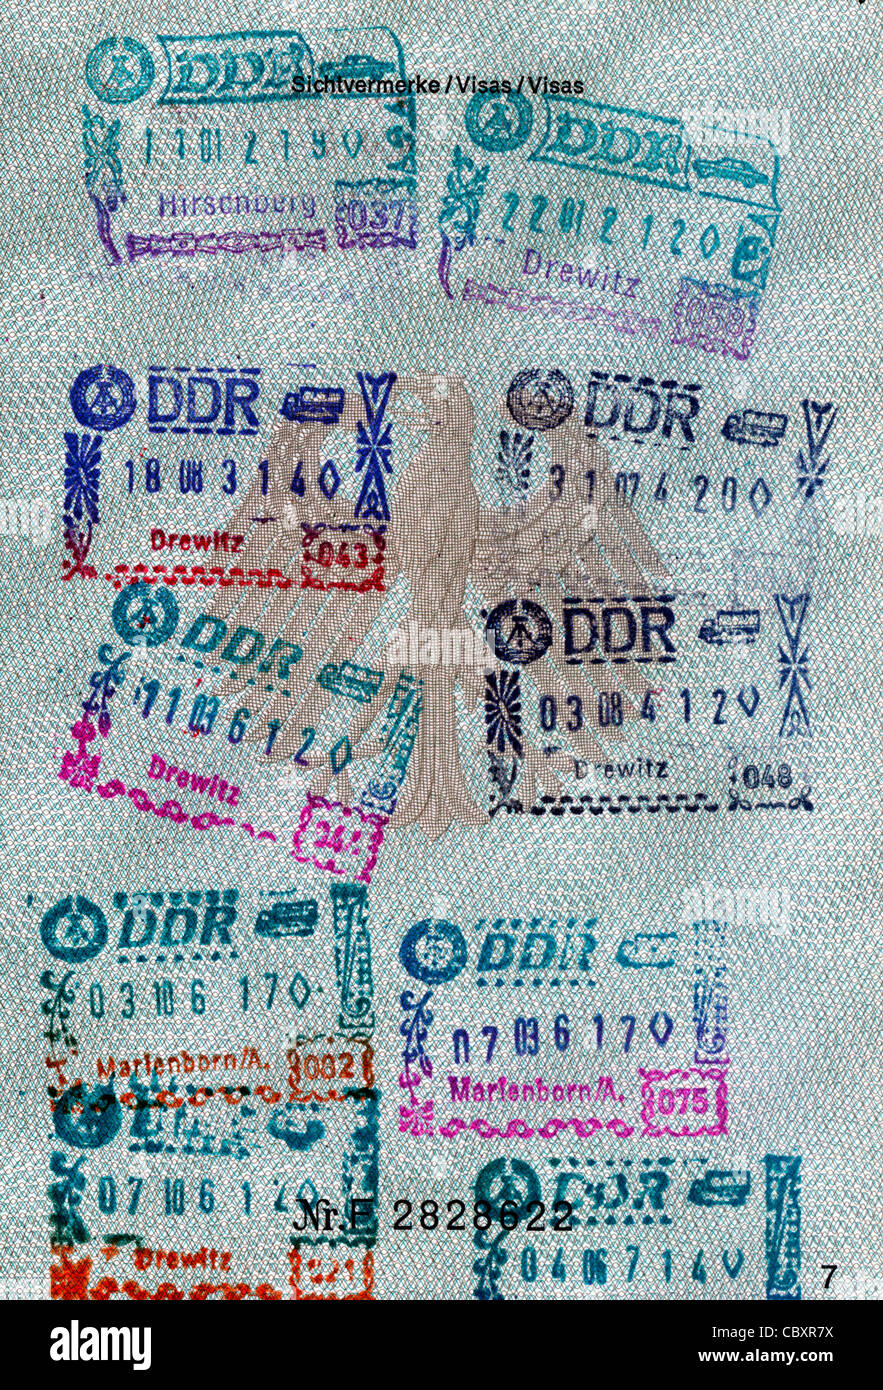 Passeport de la République fédérale d'Allemagne avec des timbres de la République démocratique allemande pour les trajets en transit par la RDA. Banque D'Images